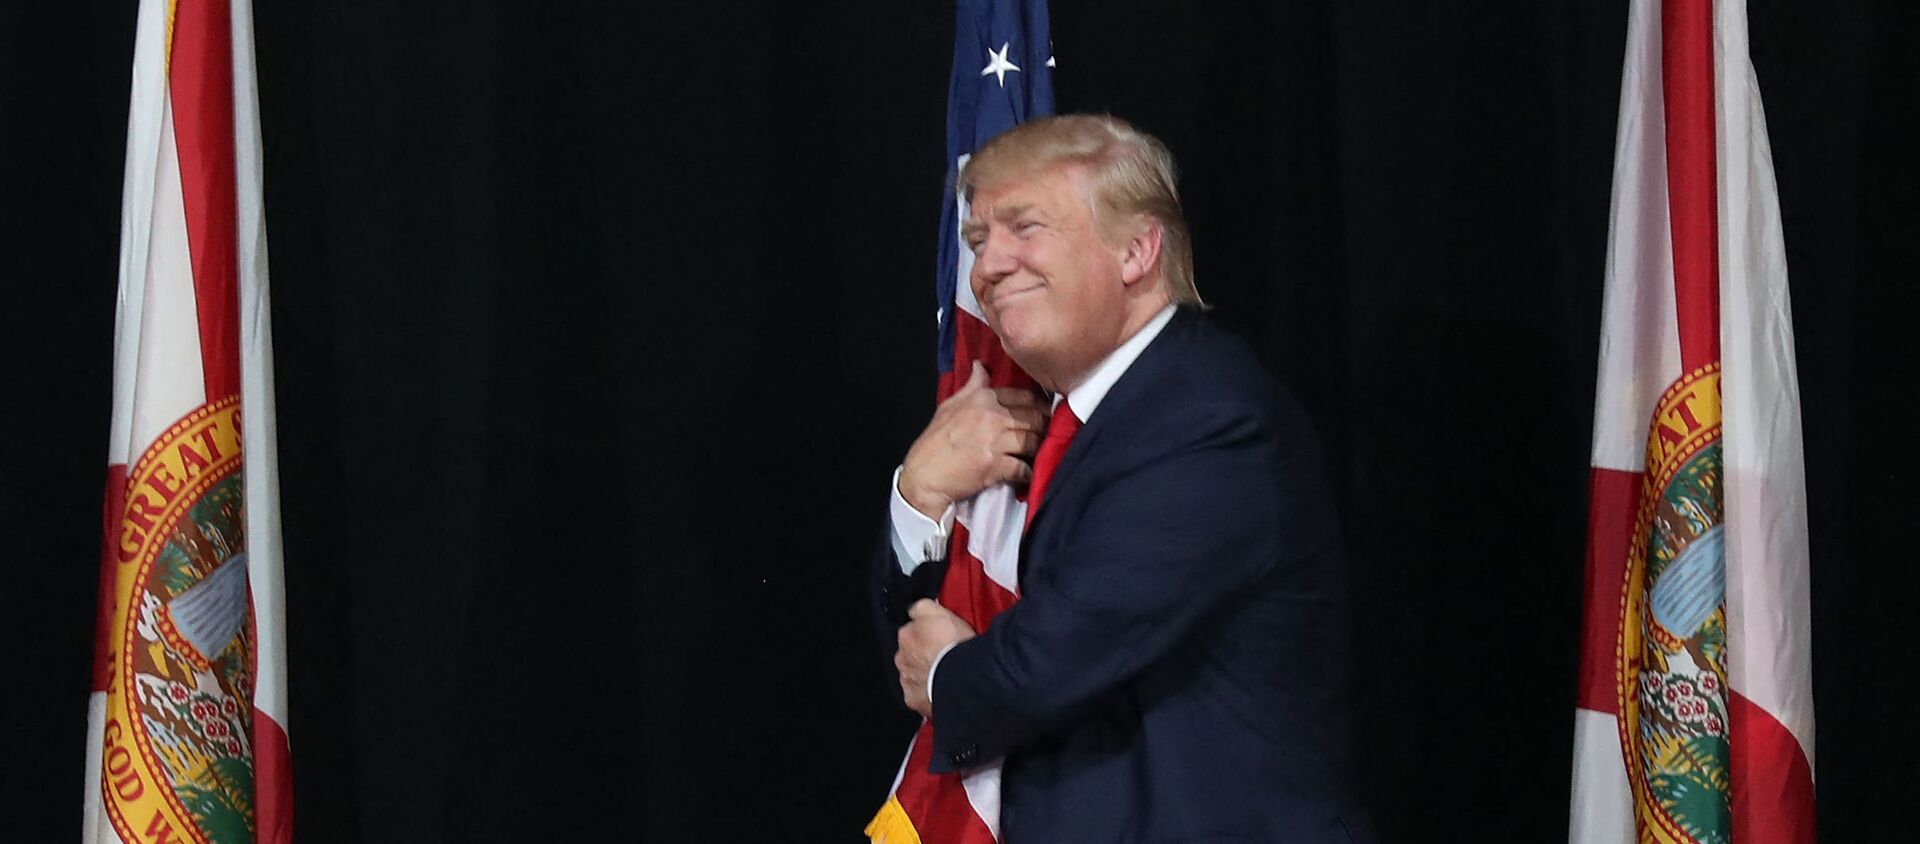 Тампа, Флорида - 24 октября: Кандидат в президенты от республиканцев Дональд Трамп обнимает американский флаг, когда он прибывает на митинг кампании в амфитеатре кредитного союза MidFlorida 24 октября 2016 года в Тампе, Флорида. До президентских выборов осталось 14 дней. Джо Рэдл / Getty Images / AFP (Фото Джо Рэдла - Sputnik Абхазия, 1920, 03.04.2021